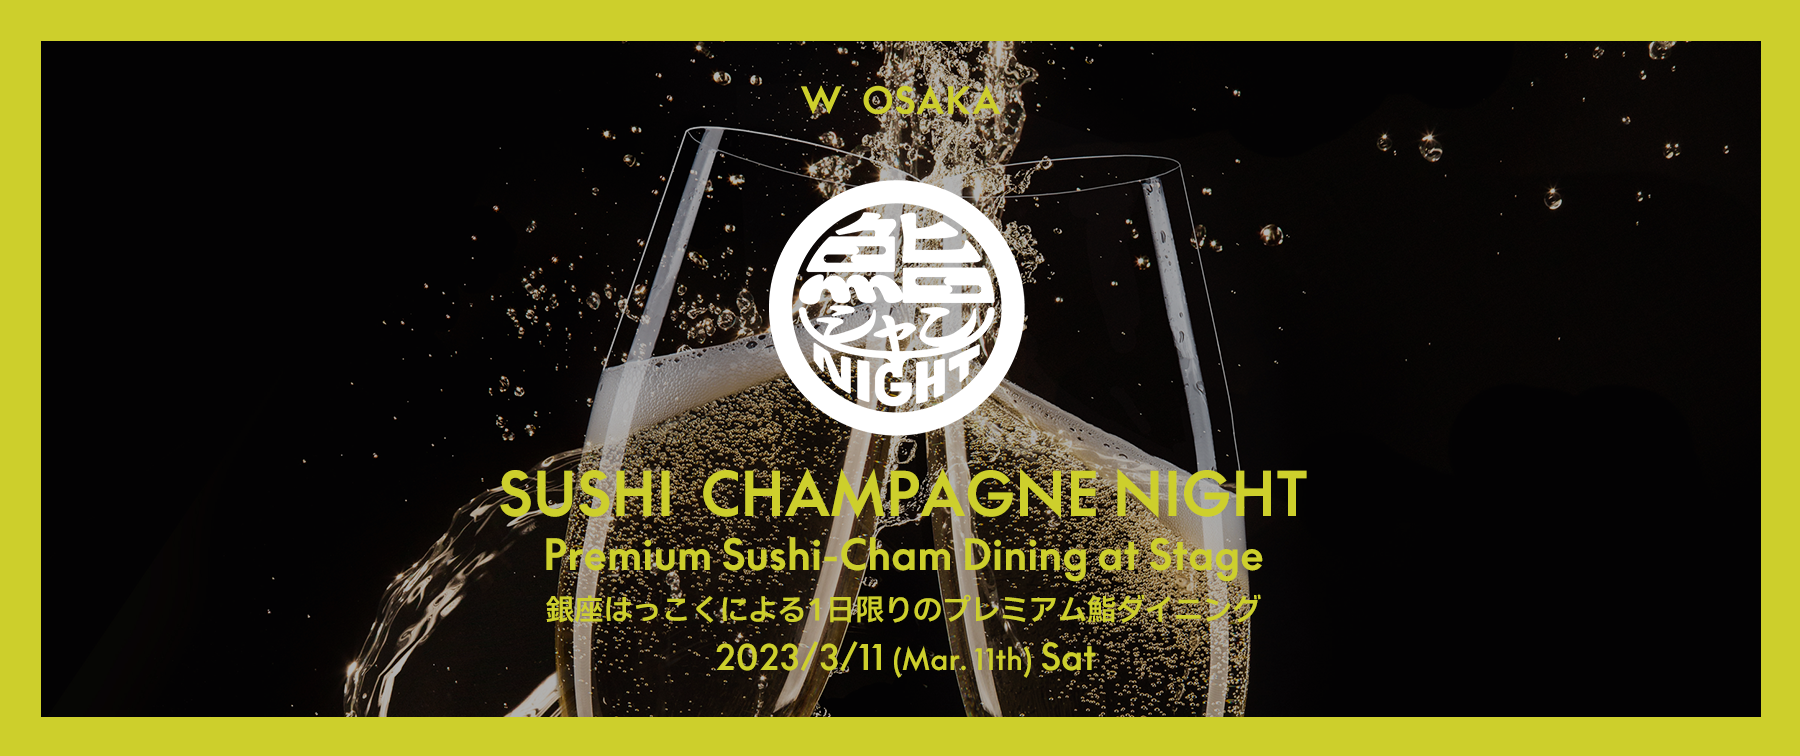 【Finished】SUSHI CHAMPAGNE NIGHT(Premium Sushi-Cham Dining)'s images1